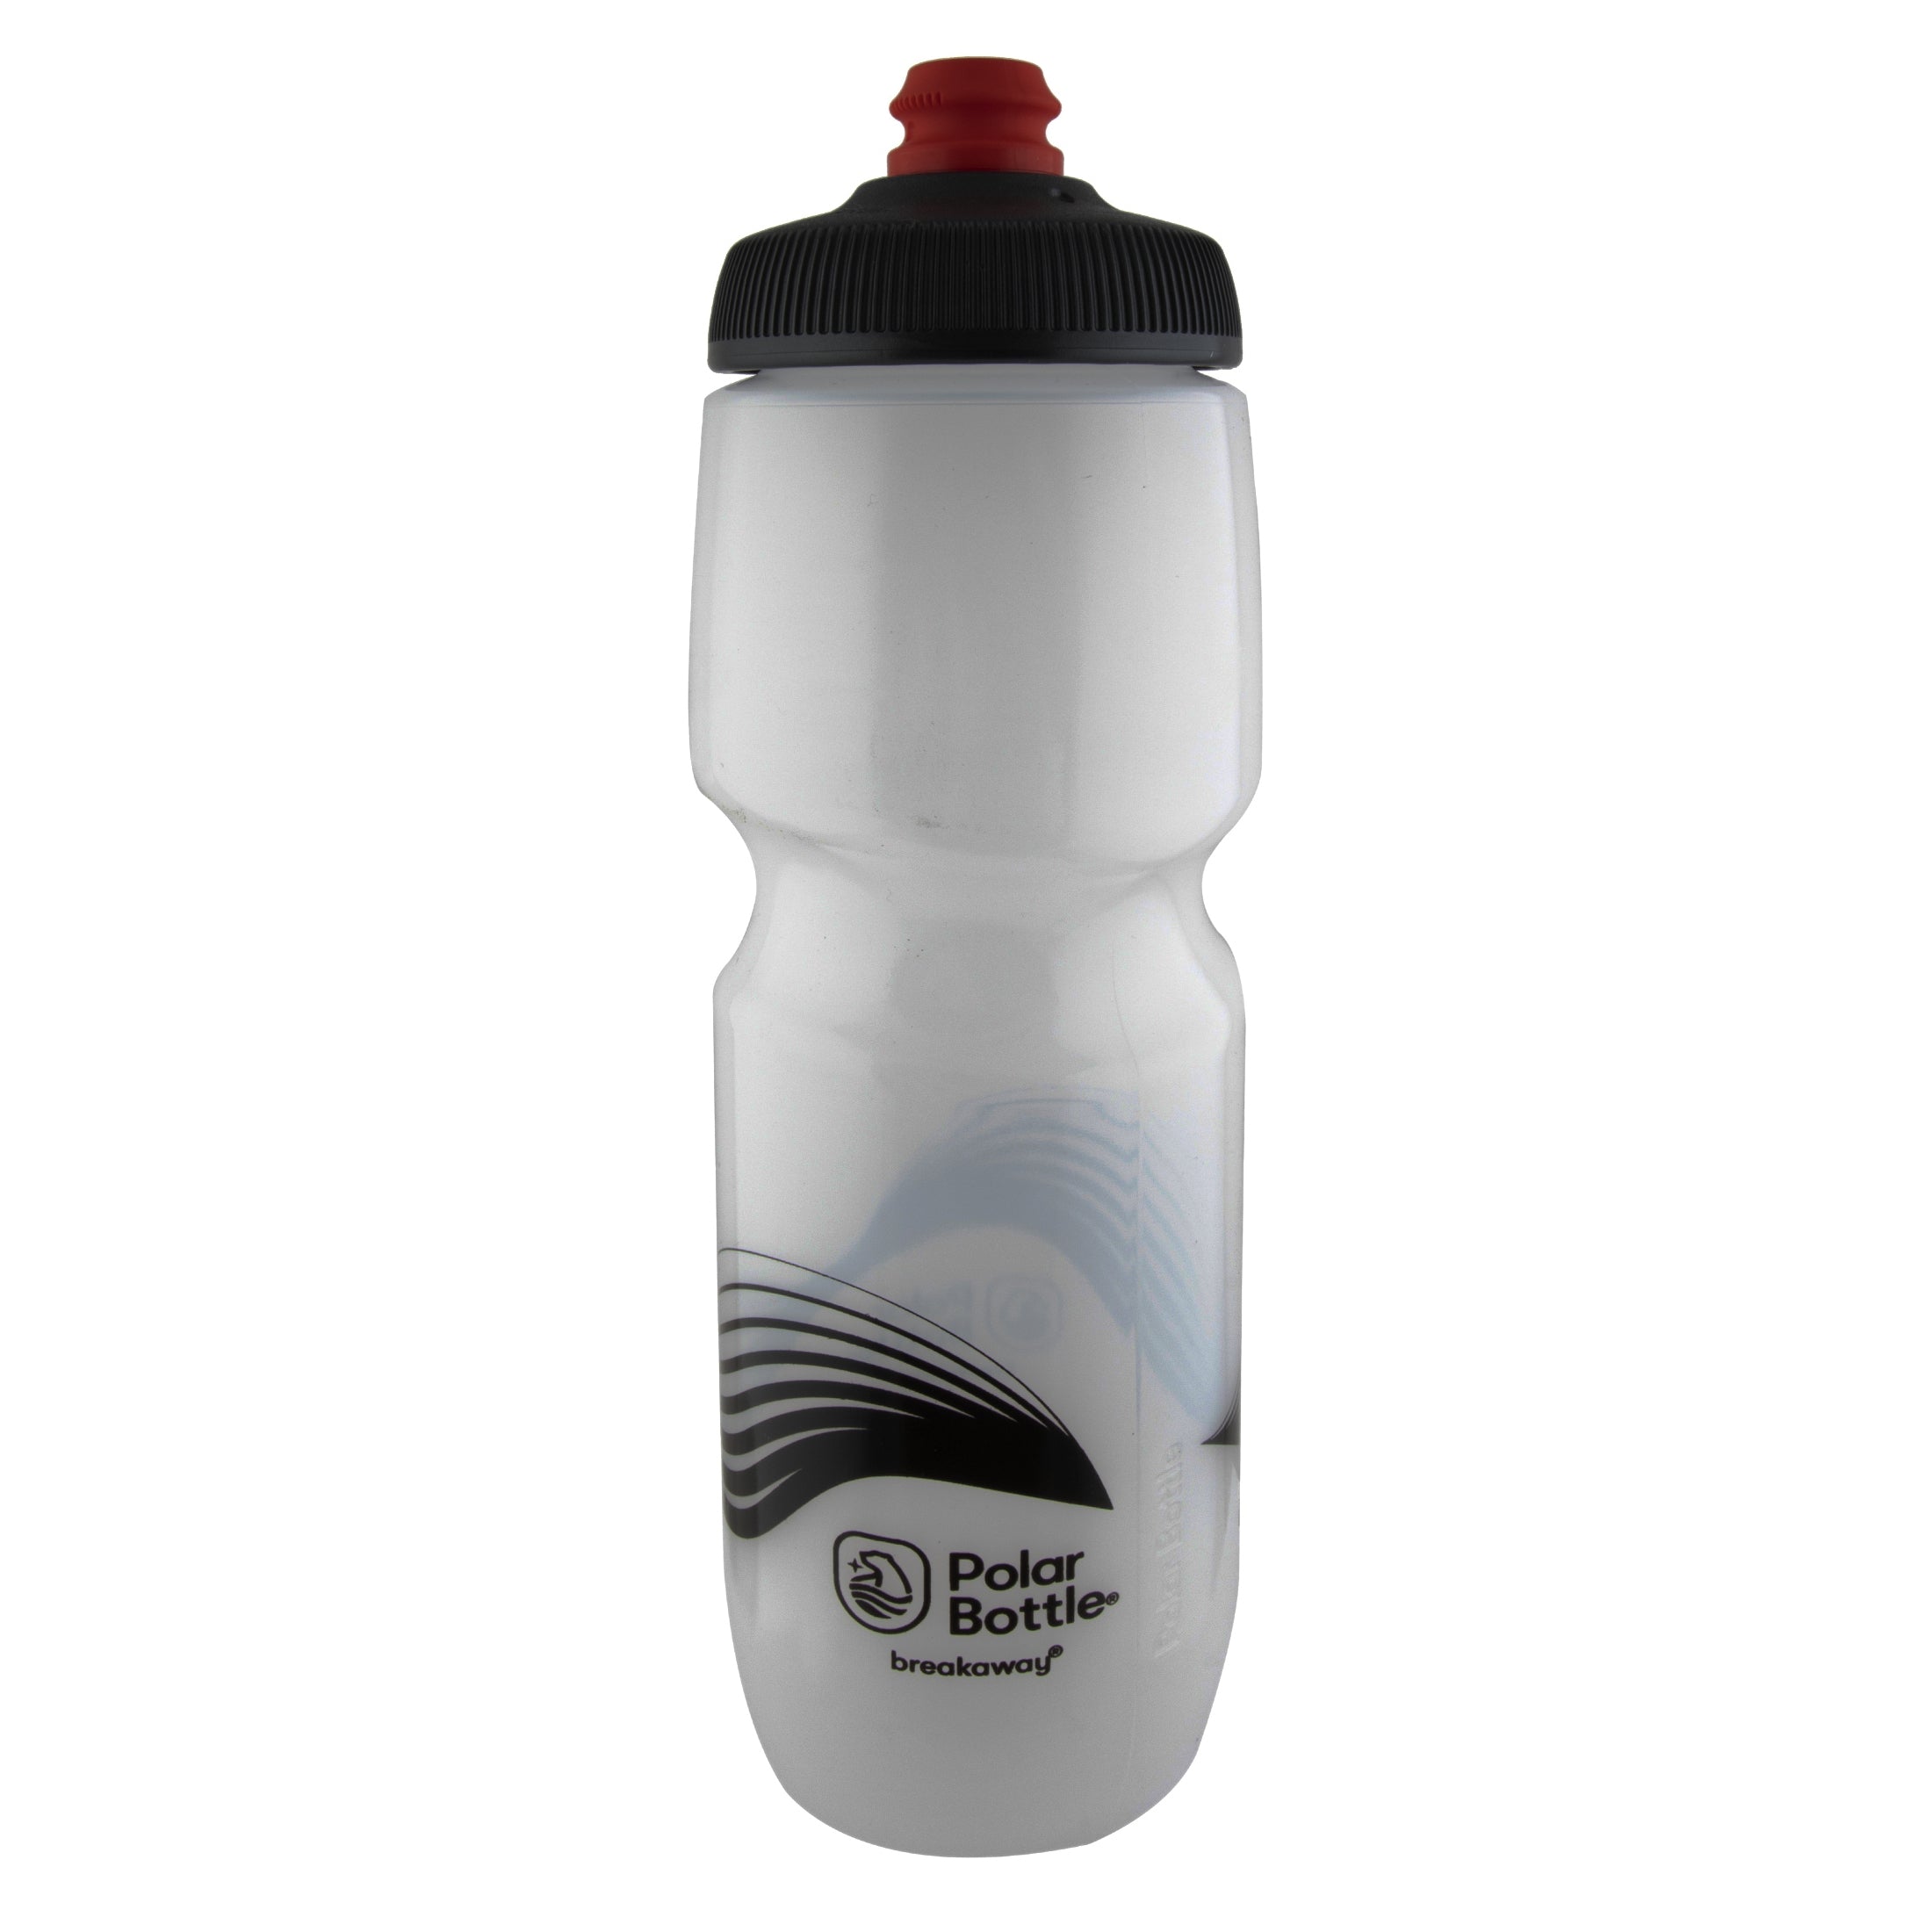 Buy frost-charcoal Polar Bottle 30oz Breakaway Wave NON Insulated Bike Water Bottle